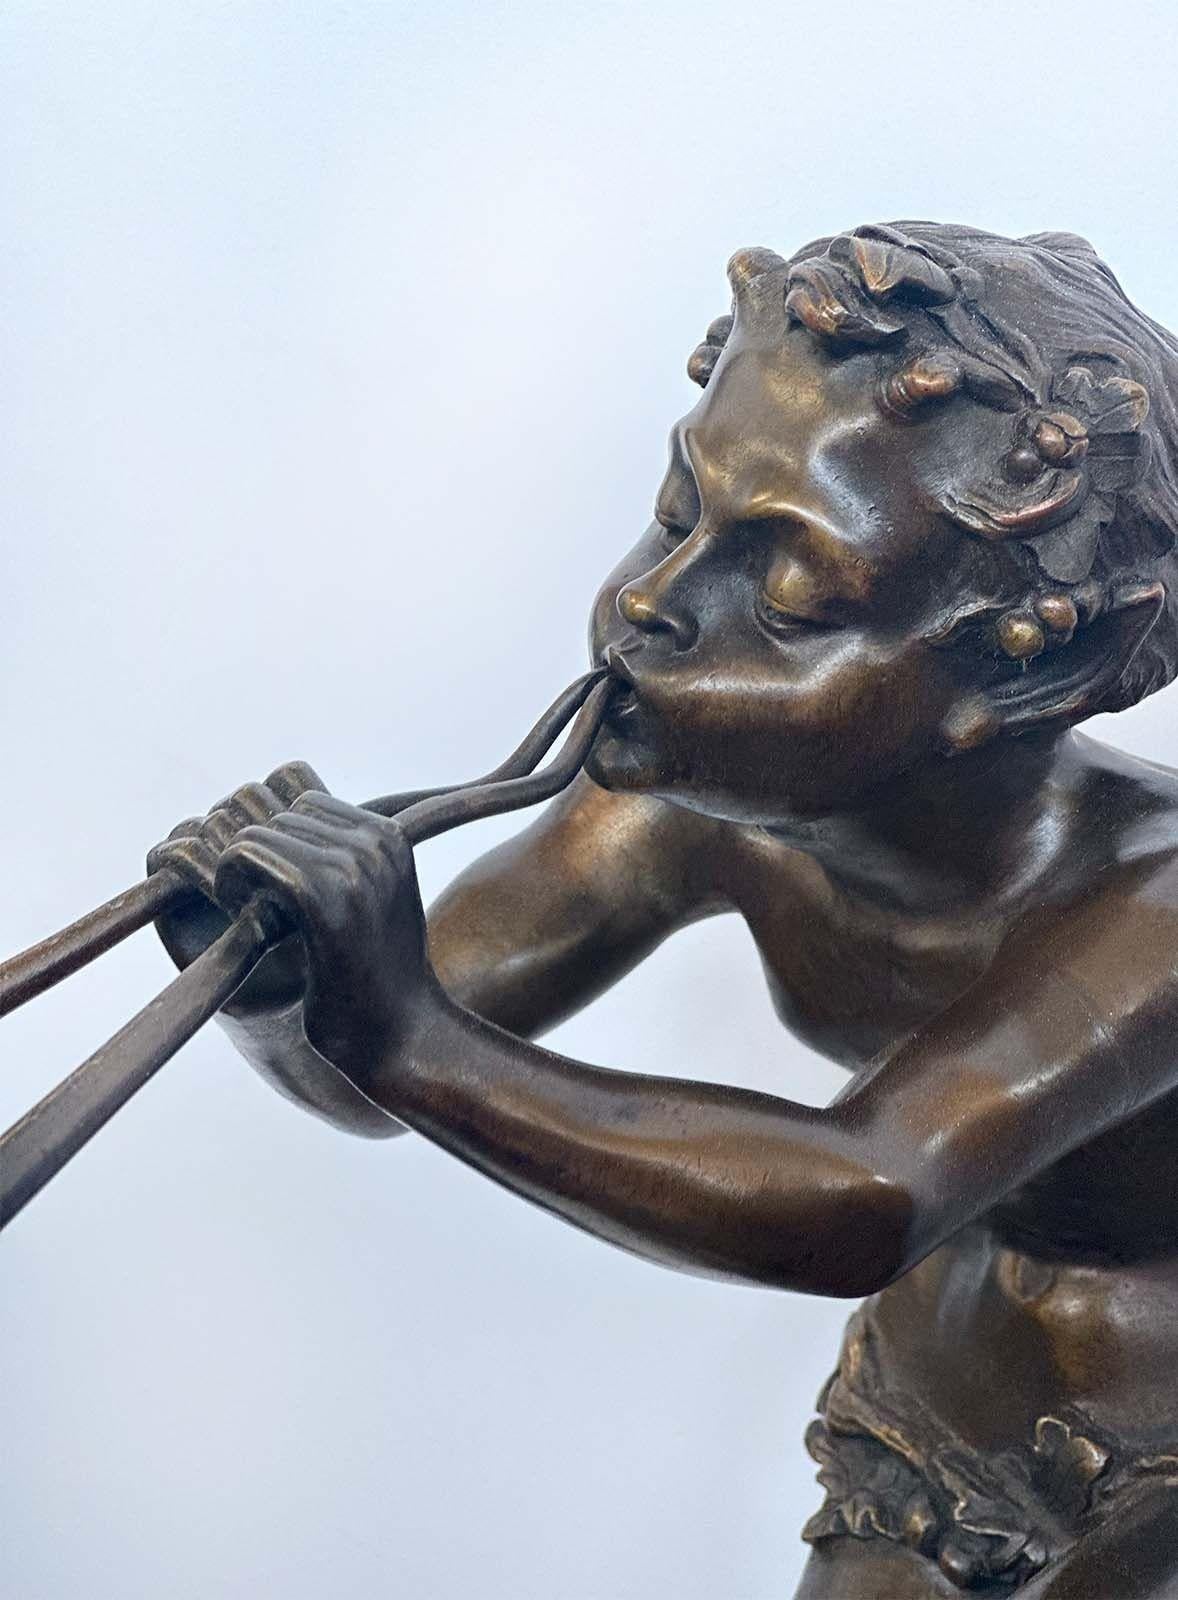 Magnifique sculpture en bronze de la fin du XIXe siècle représentant une créature faunique mythique jouant...  une flûte de Claude Michel Clodion. Ce personnage repose gracieusement sur un élégant socle en marbre, et comporte la signature de